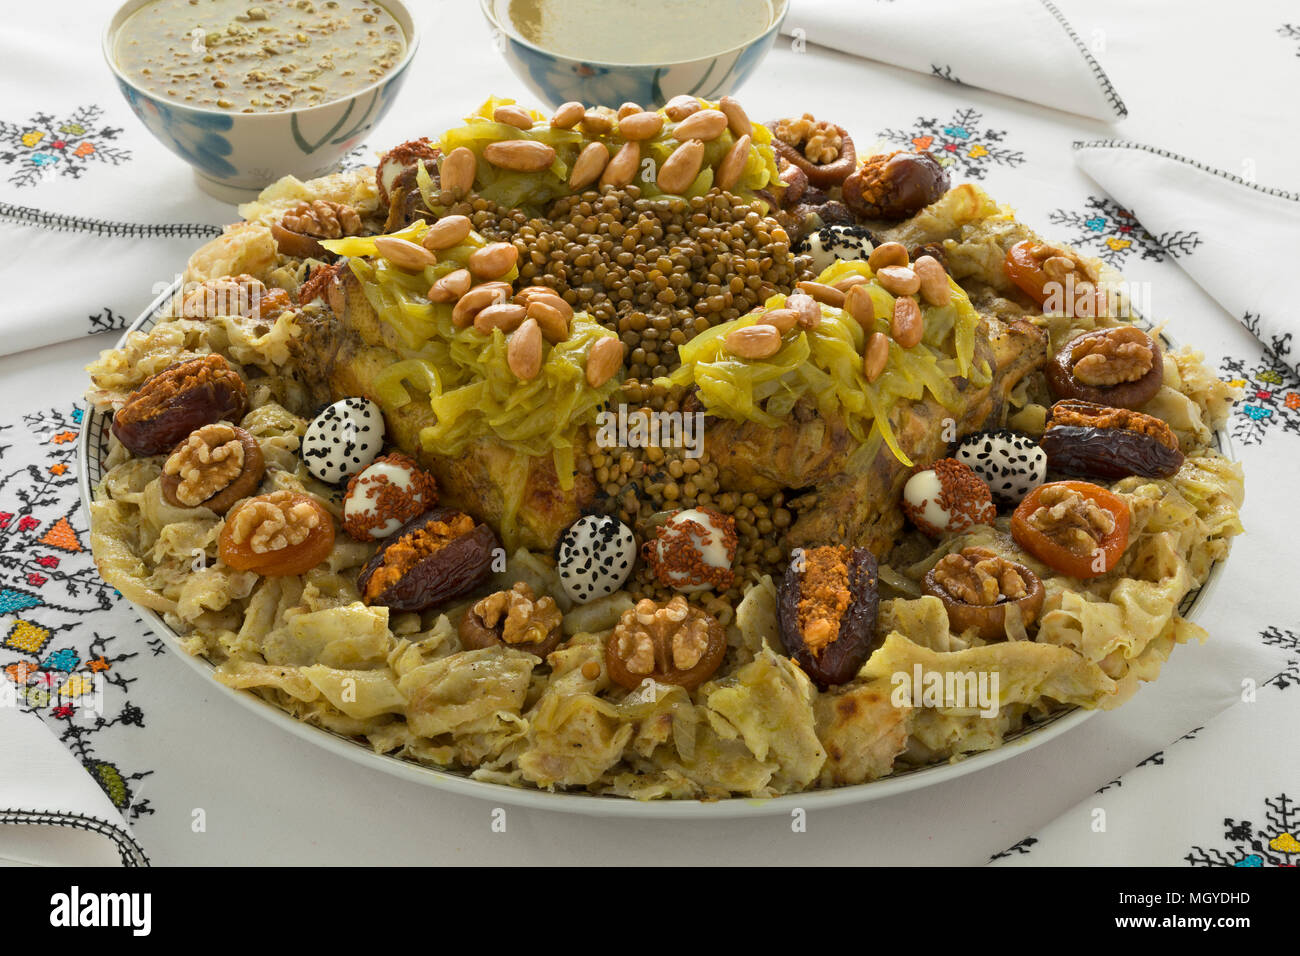 Festive Marocchino tradizionale Rfissa servito con salsa e decorared con uova di quaglia, semi, frutta e noci Foto Stock